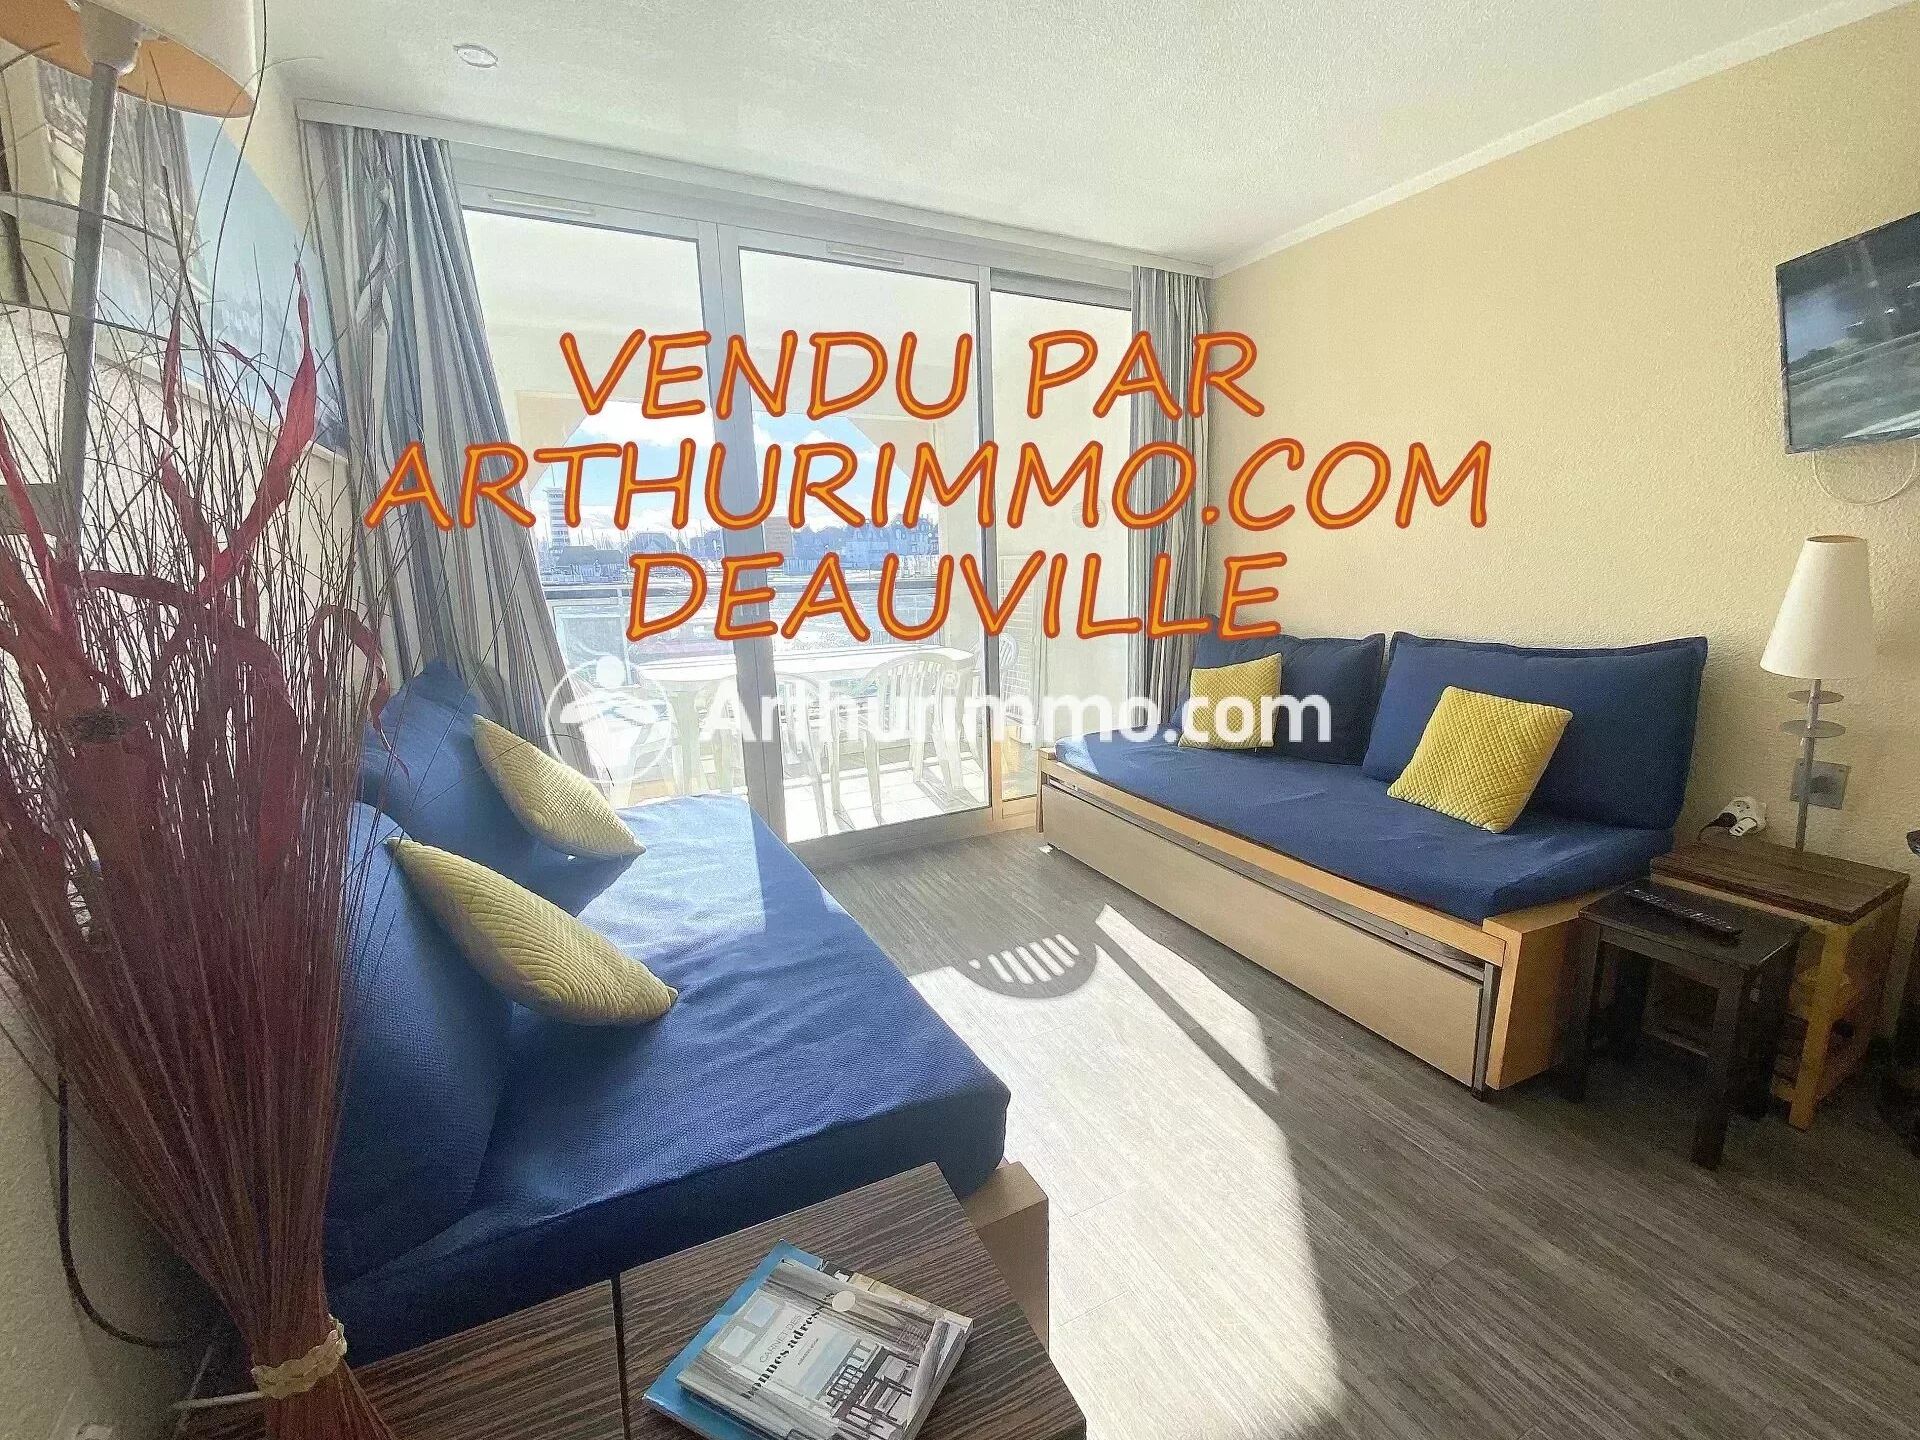 Vente Appartement 23m² 1 Pièce à Trouville-sur-Mer (14360) - Arthurimmo